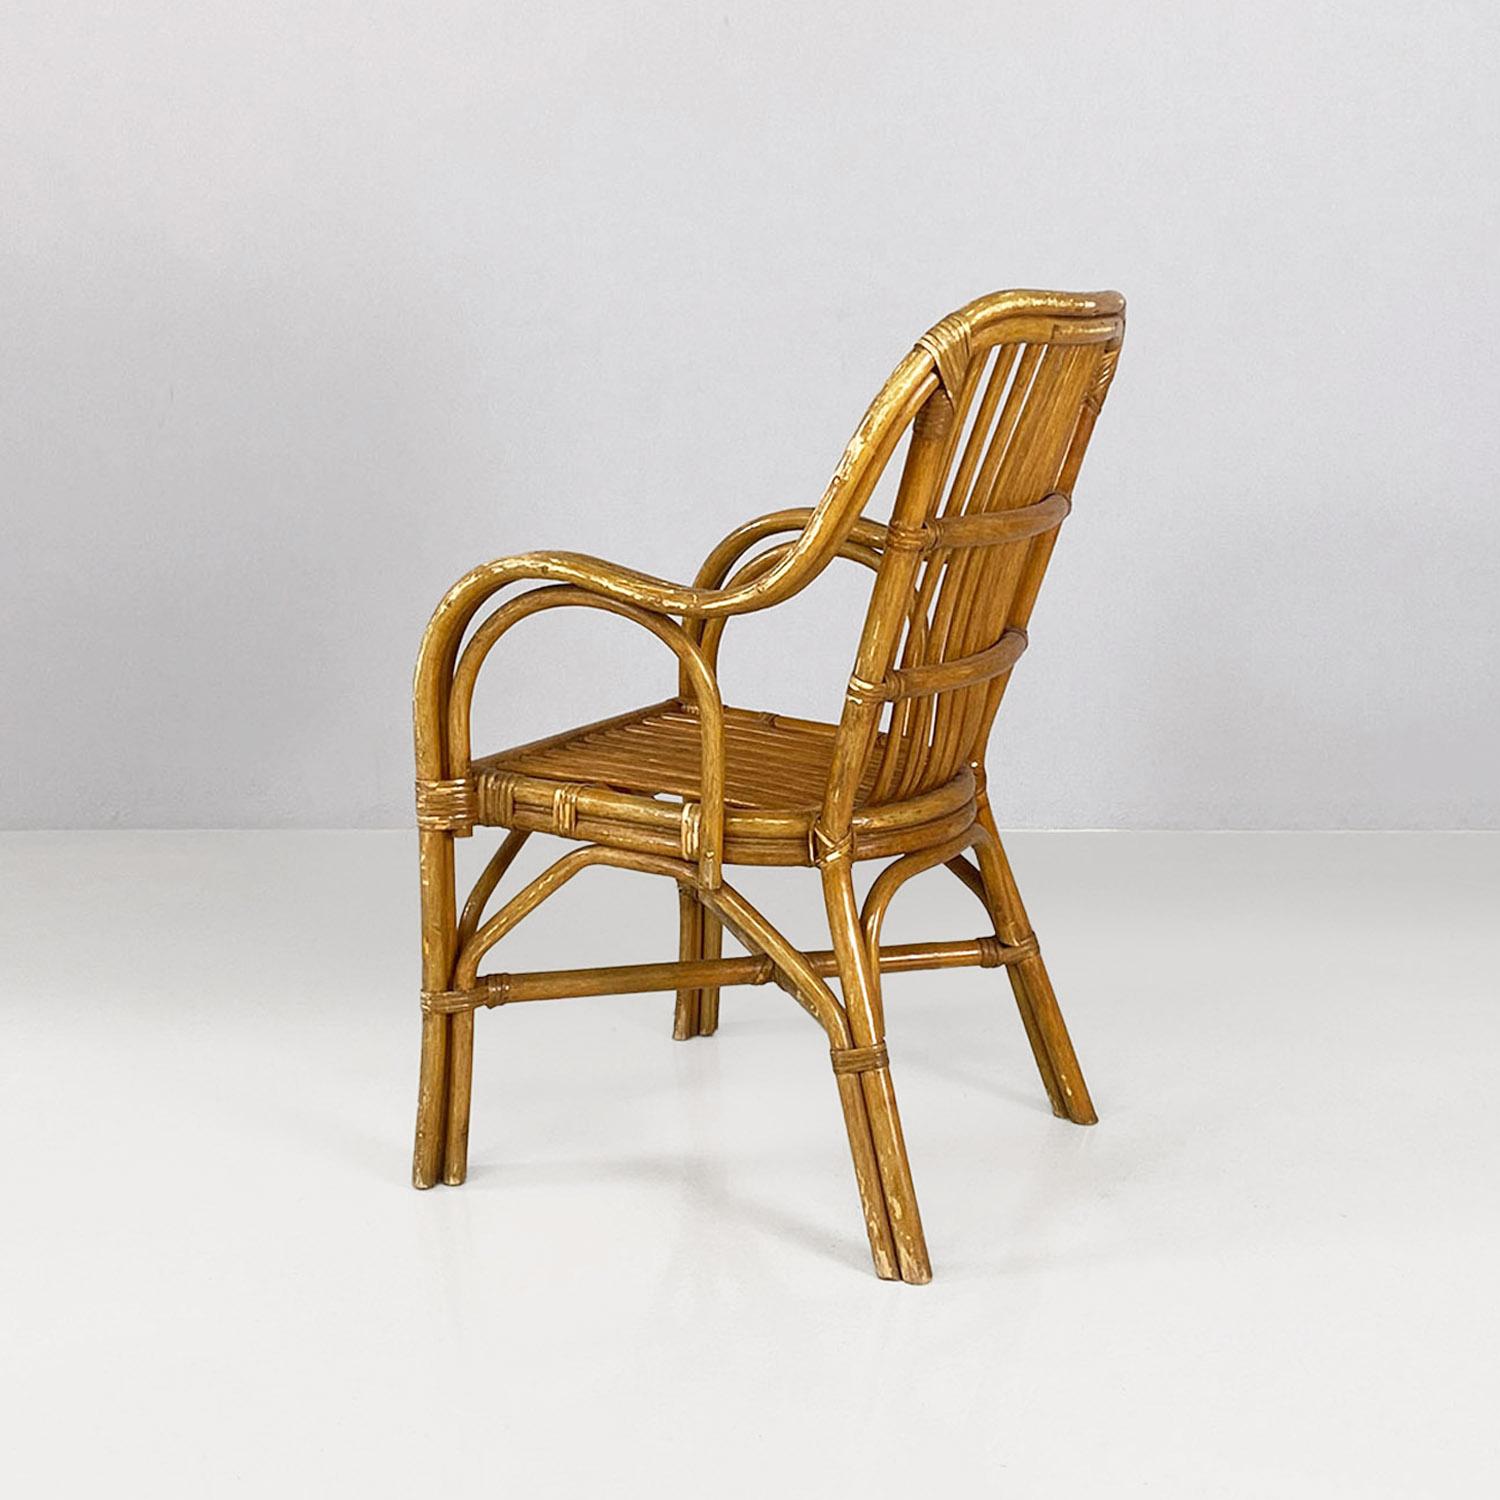 Magnifiques fauteuils en rotin italiens classiques du milieu du siècle dernier avec accoudoirs incurvés, années 1960
Fauteuils dont la structure est entièrement en rotin avec des bandes pour maintenir l'ensemble, avec des accoudoirs incurvés.
1960